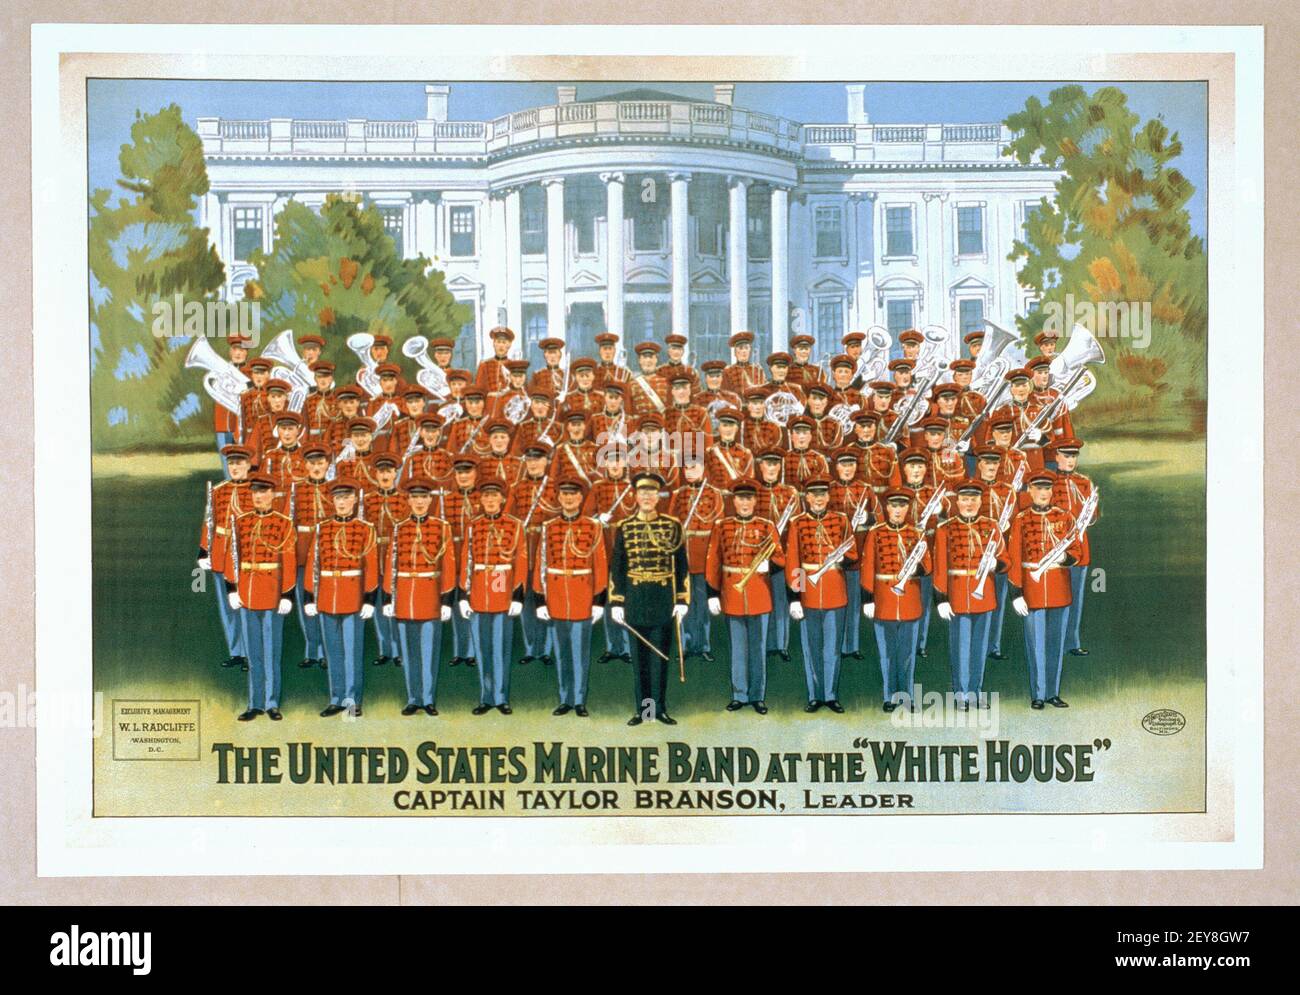 Die United States Marine Band im Weißen Haus. Poster / Illustration, alt und vintage Stil. Kapitän Taylor Branson, Anführer. Stockfoto